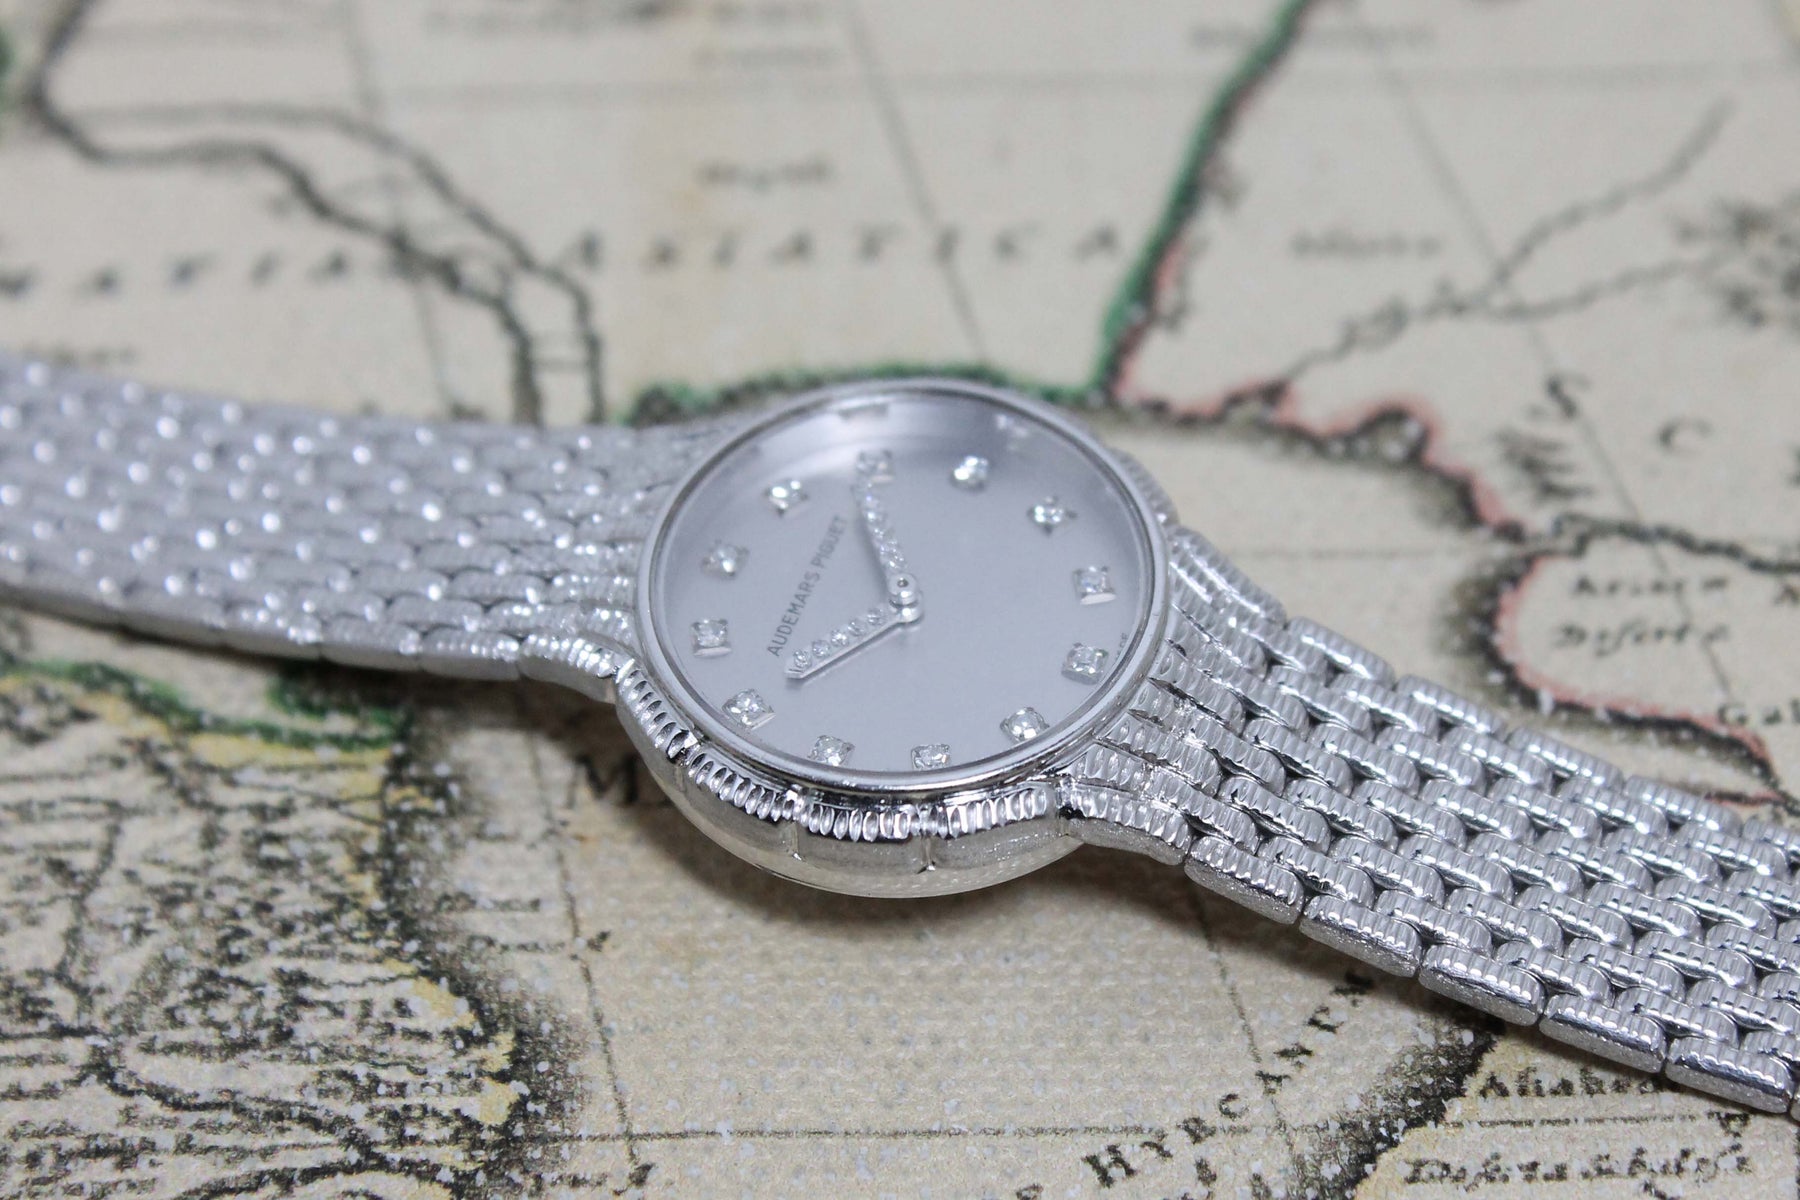 1989 Audemars Piguet Ladies 18K White Gold Watch with Diamonds Ref. 79195BC